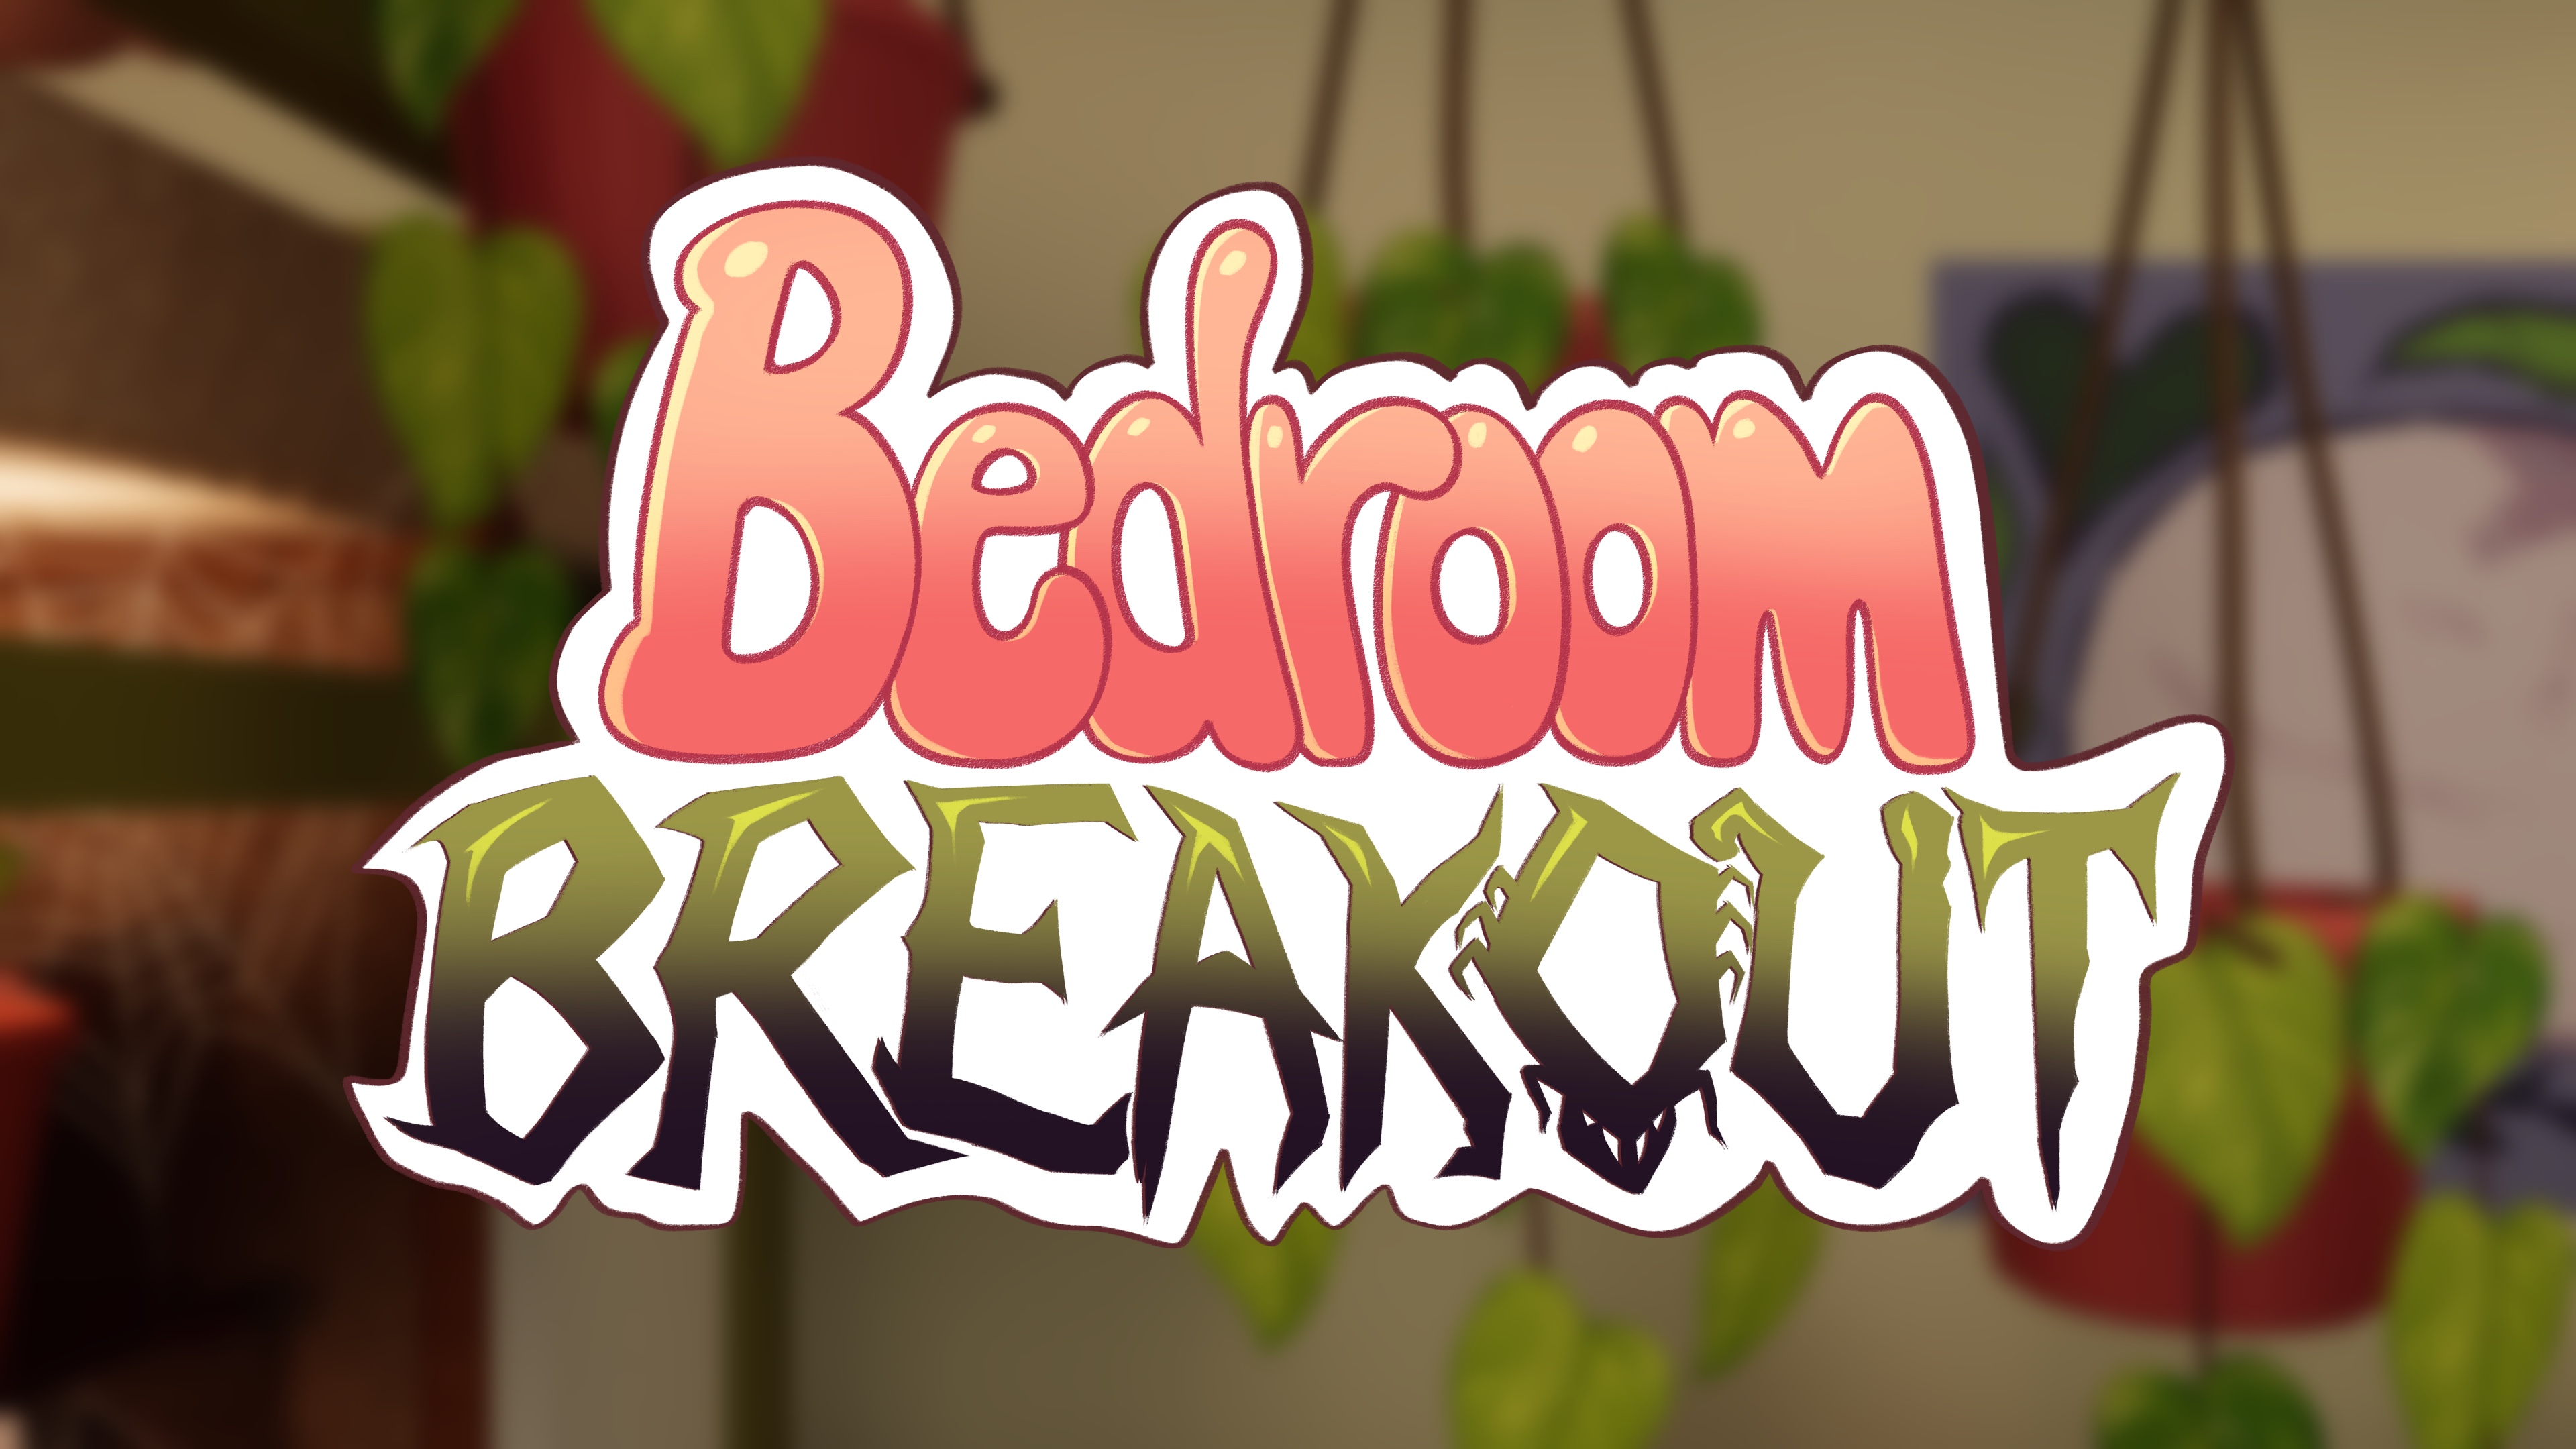 Bedroom Breakout